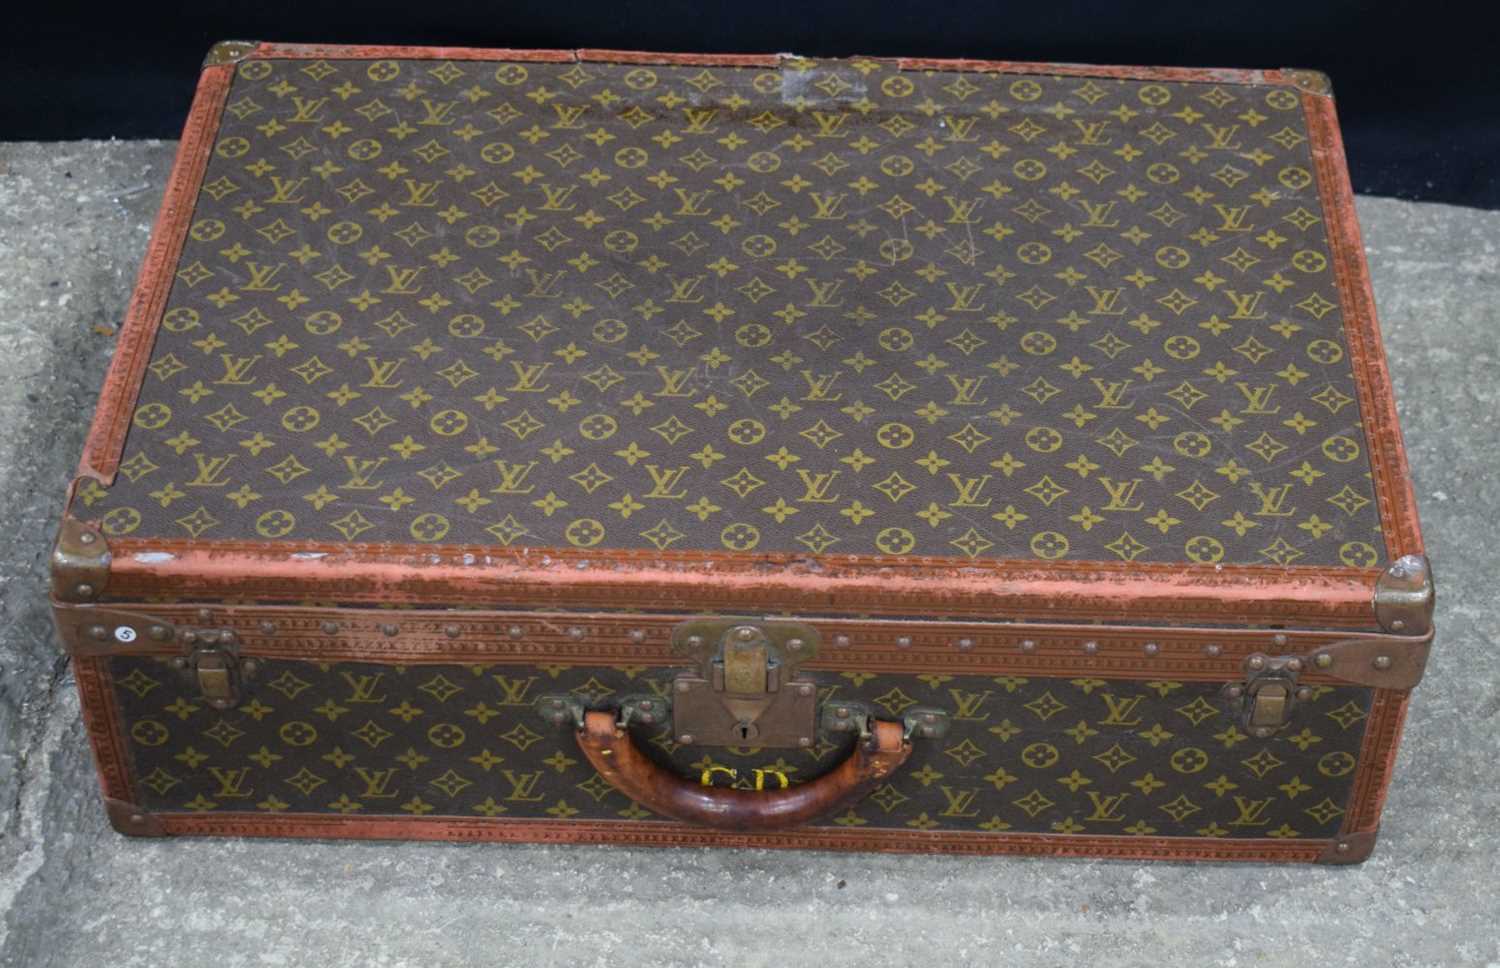 A Louis Vuitton suitcase 22 x 70 x 47 cm. - Image 2 of 20